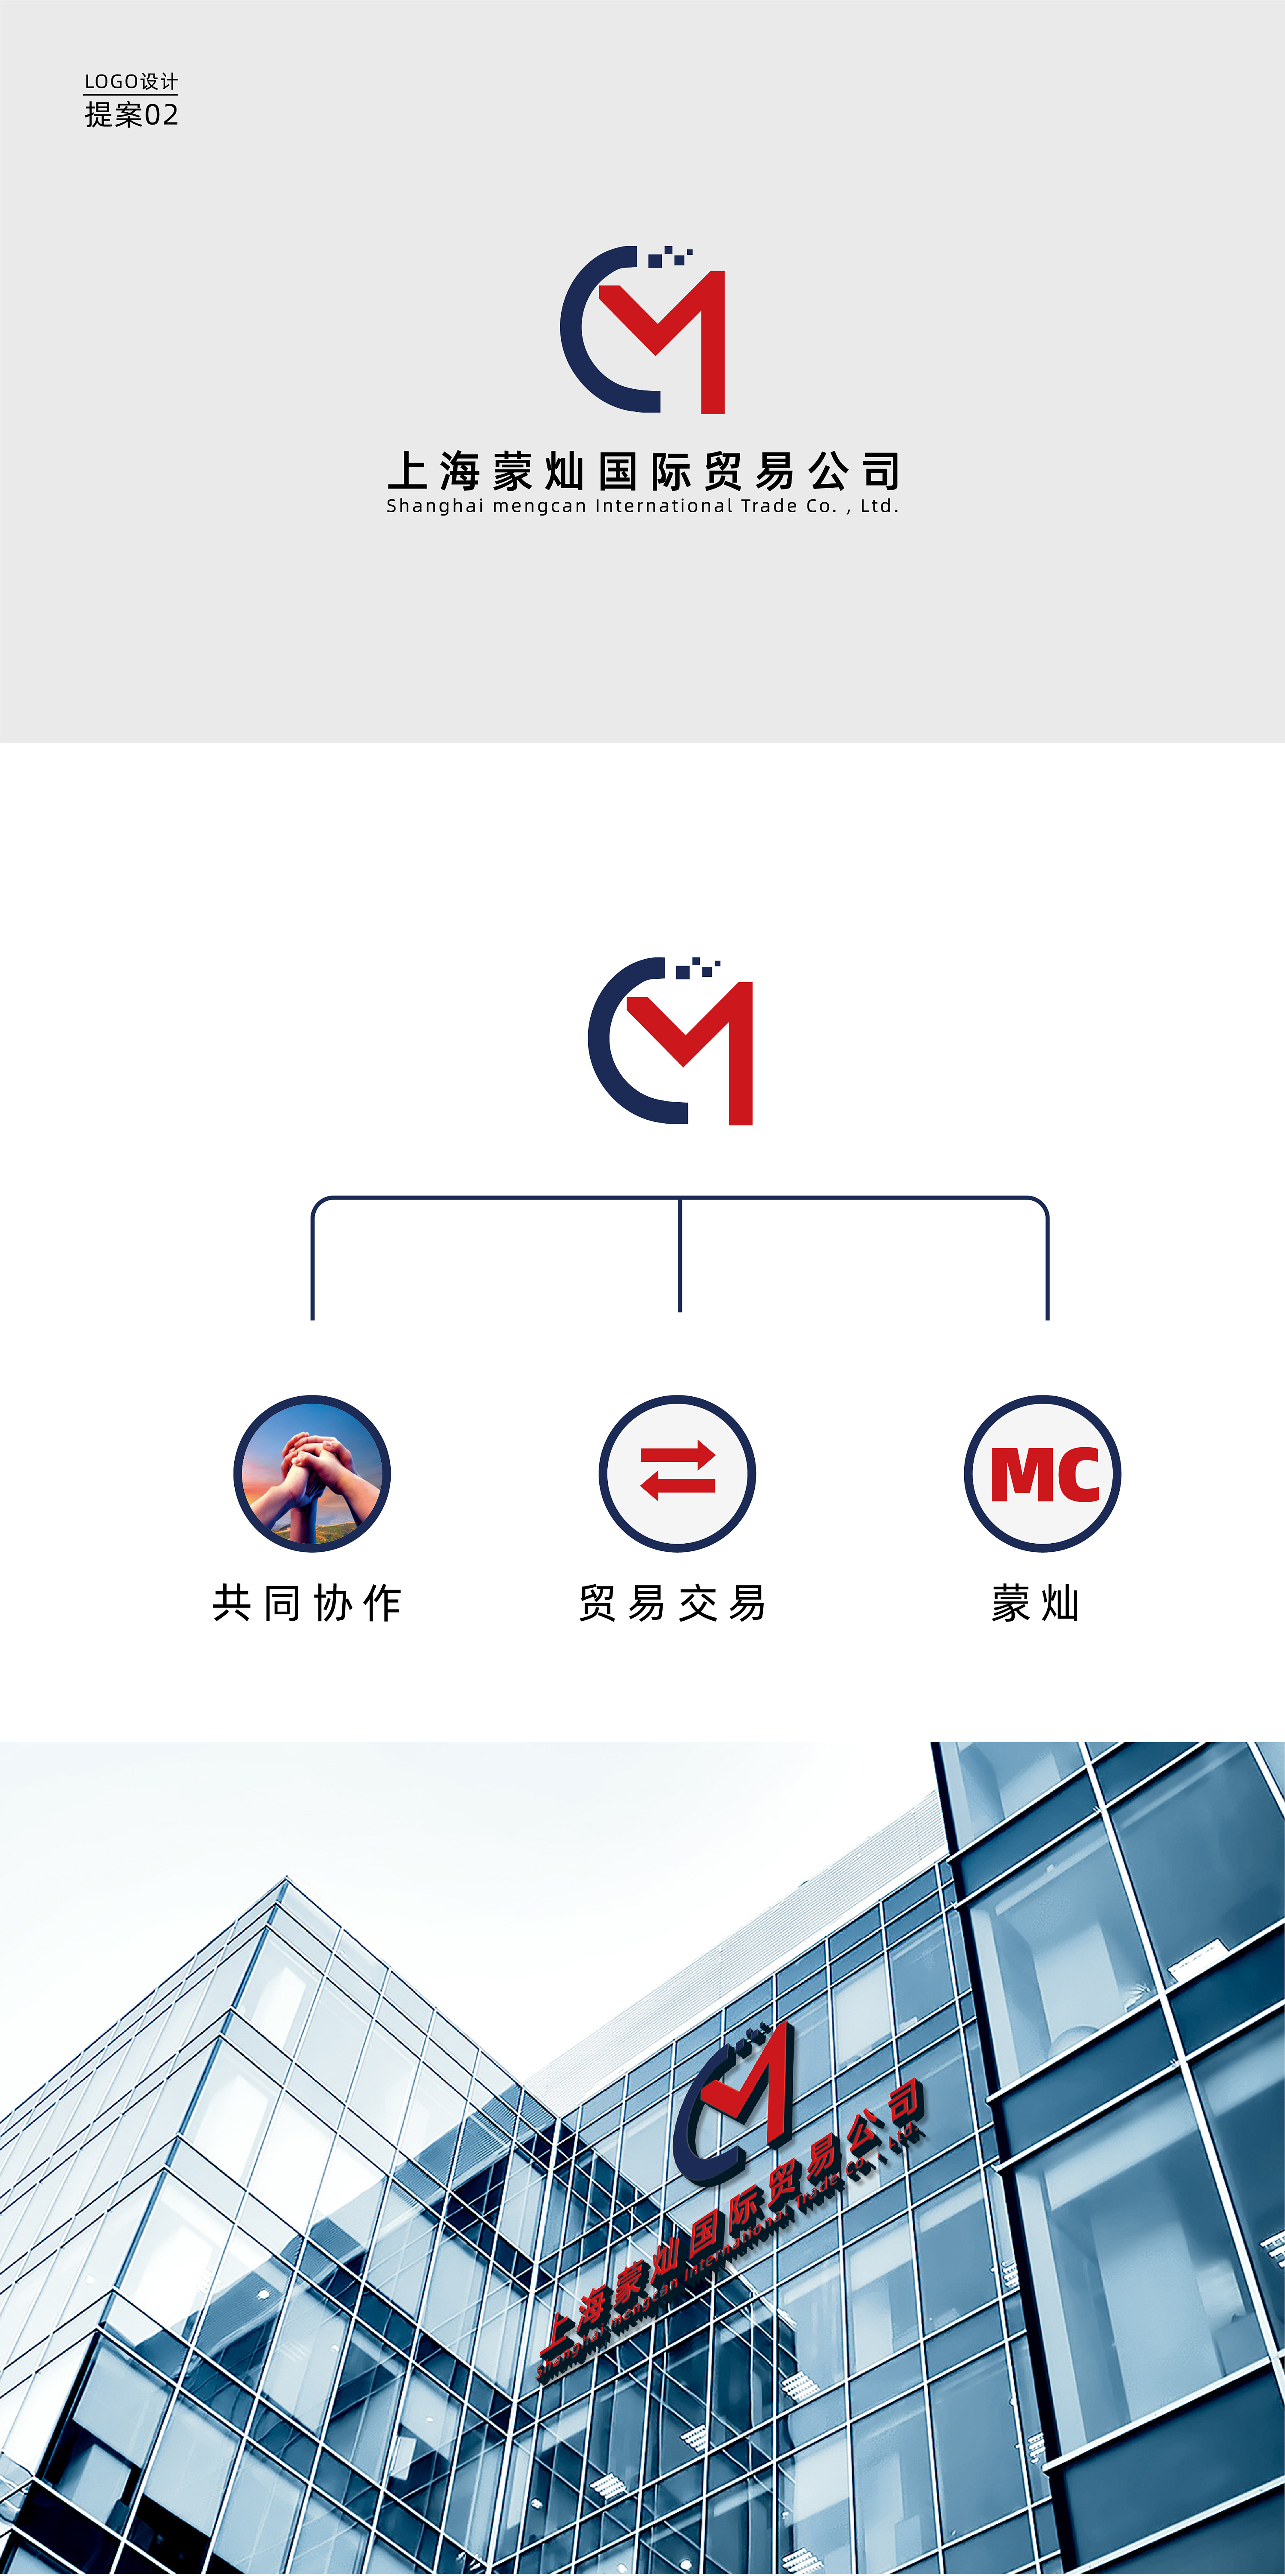 上海蒙灿国际贸易公司——logo